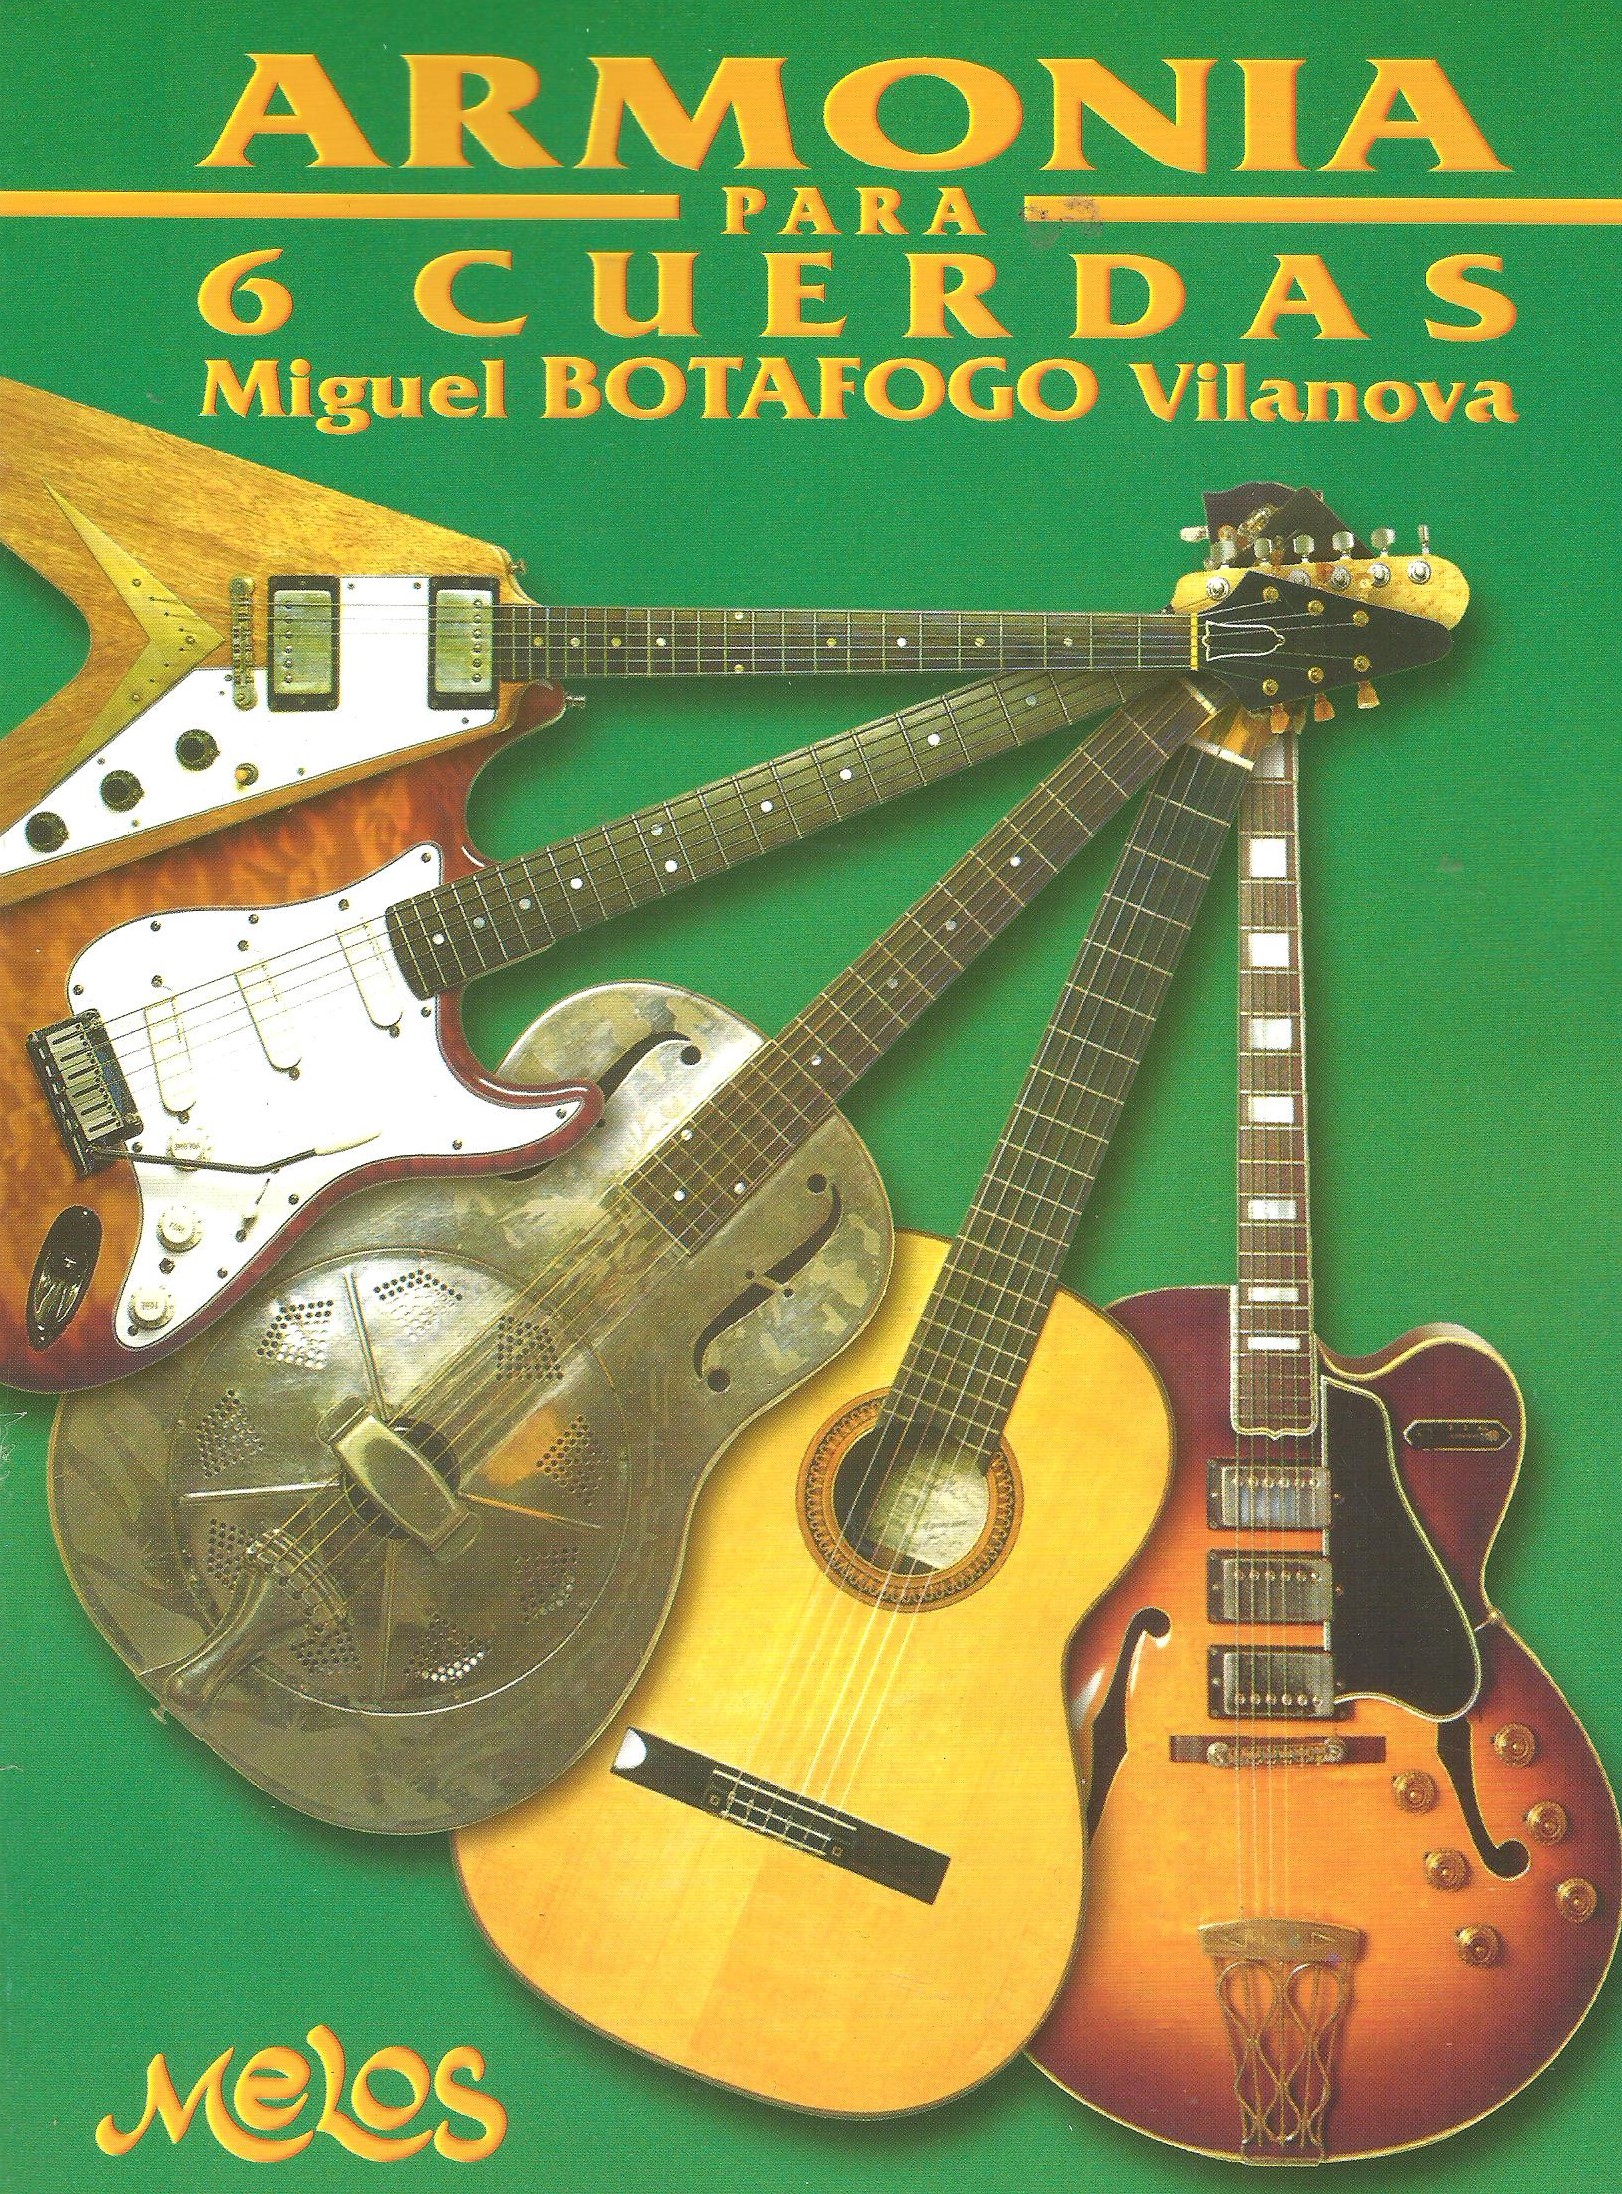 Miguel “Botafogo” Vilanova – Armonia para 6 – Música Nuestra